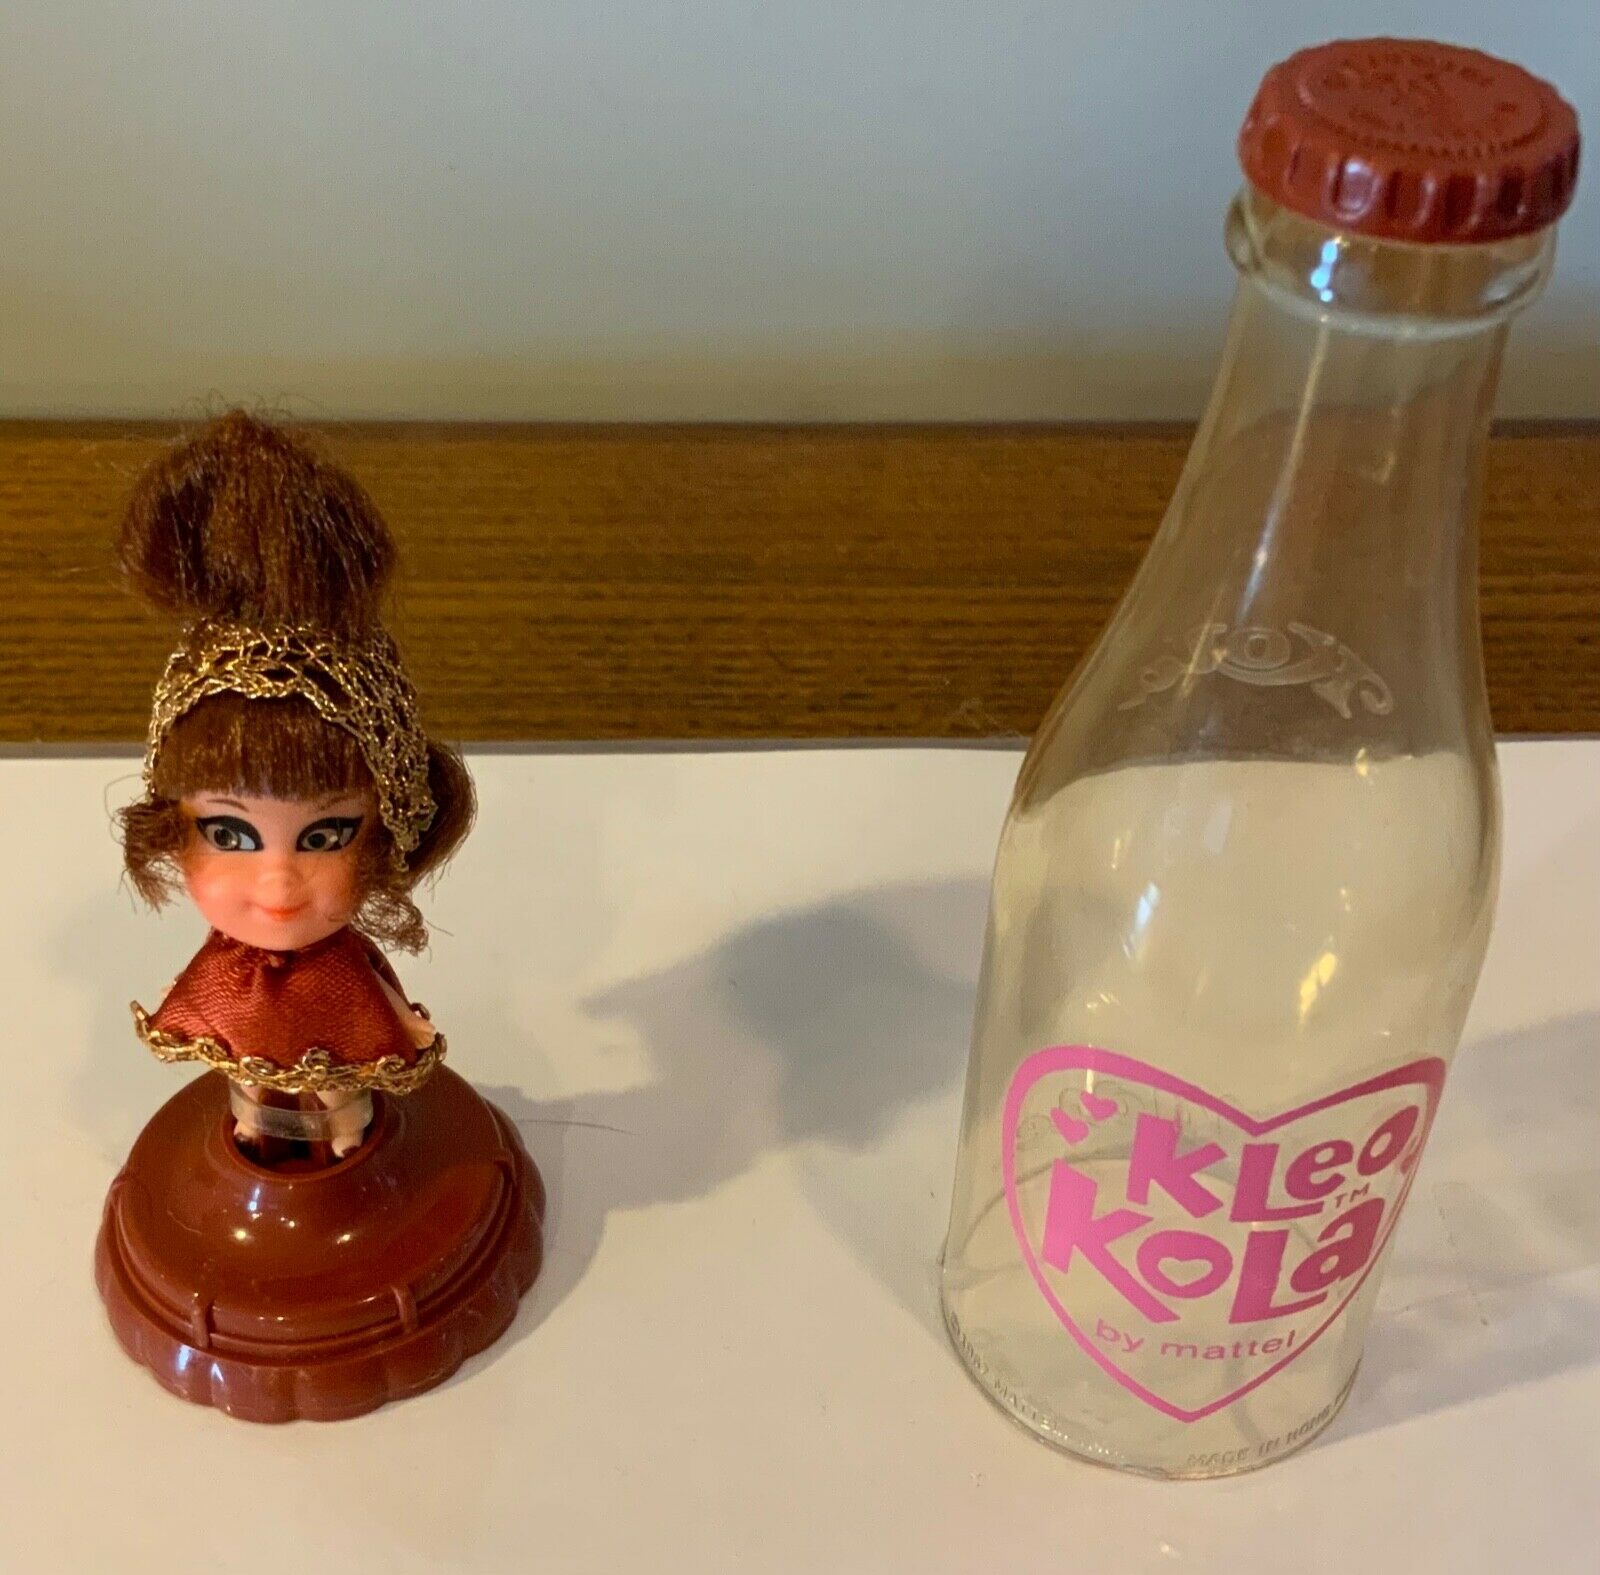 Mattel Vintage Kiddles Kleo Kola with stand in original clear bottle   Adorable